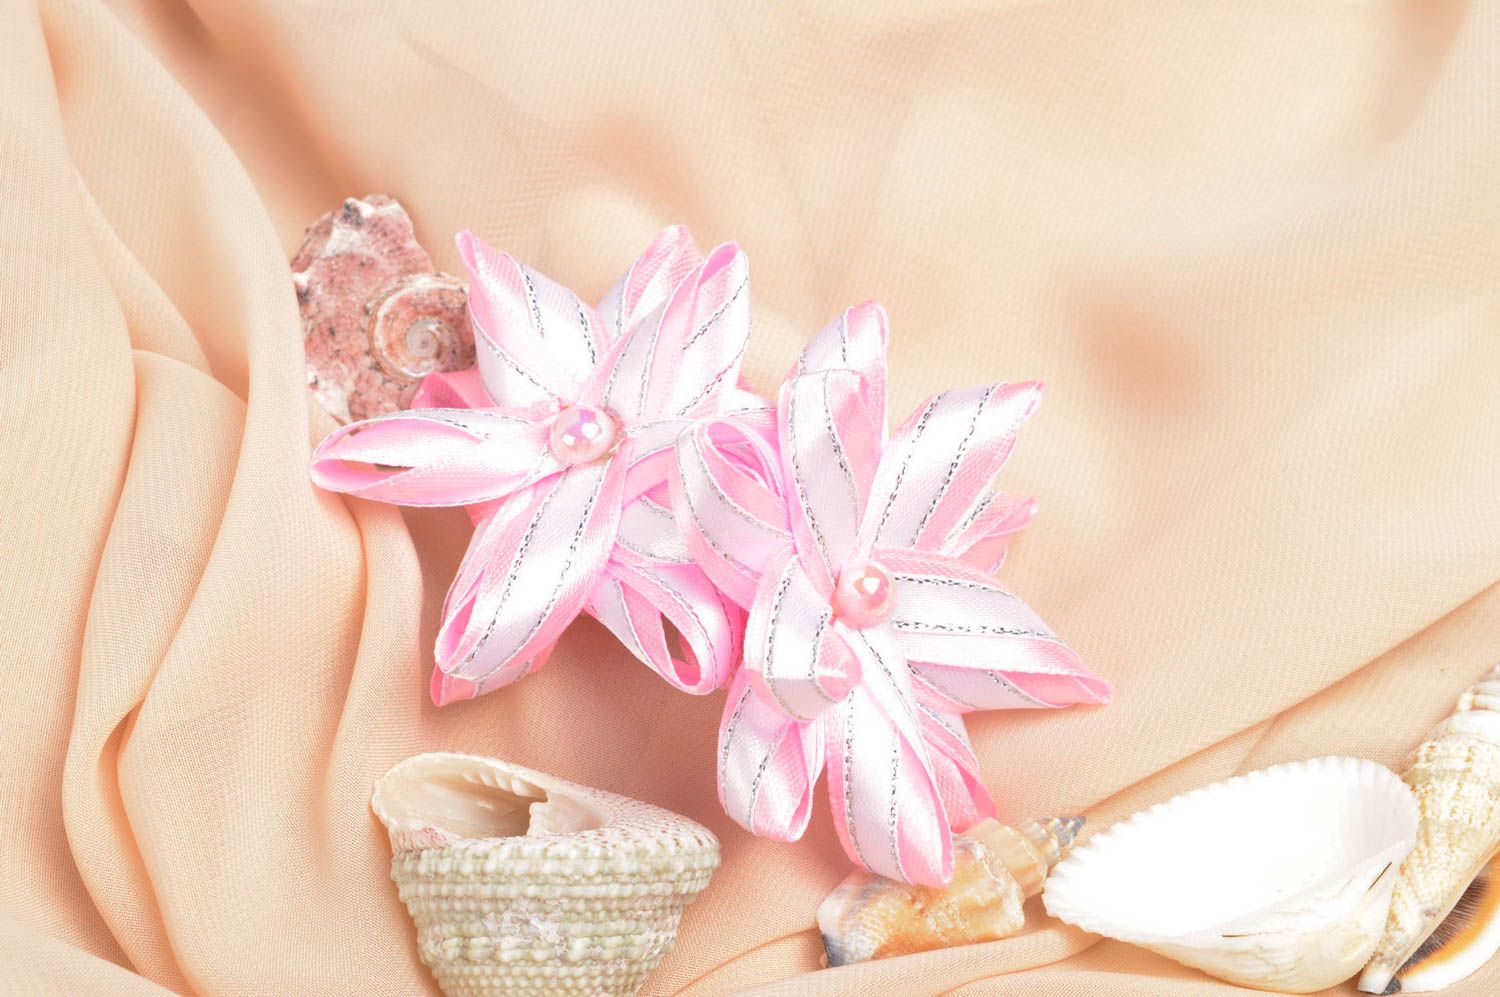 Handmade flower hair clips 2 tender pink hair ties designer accessories photo 1